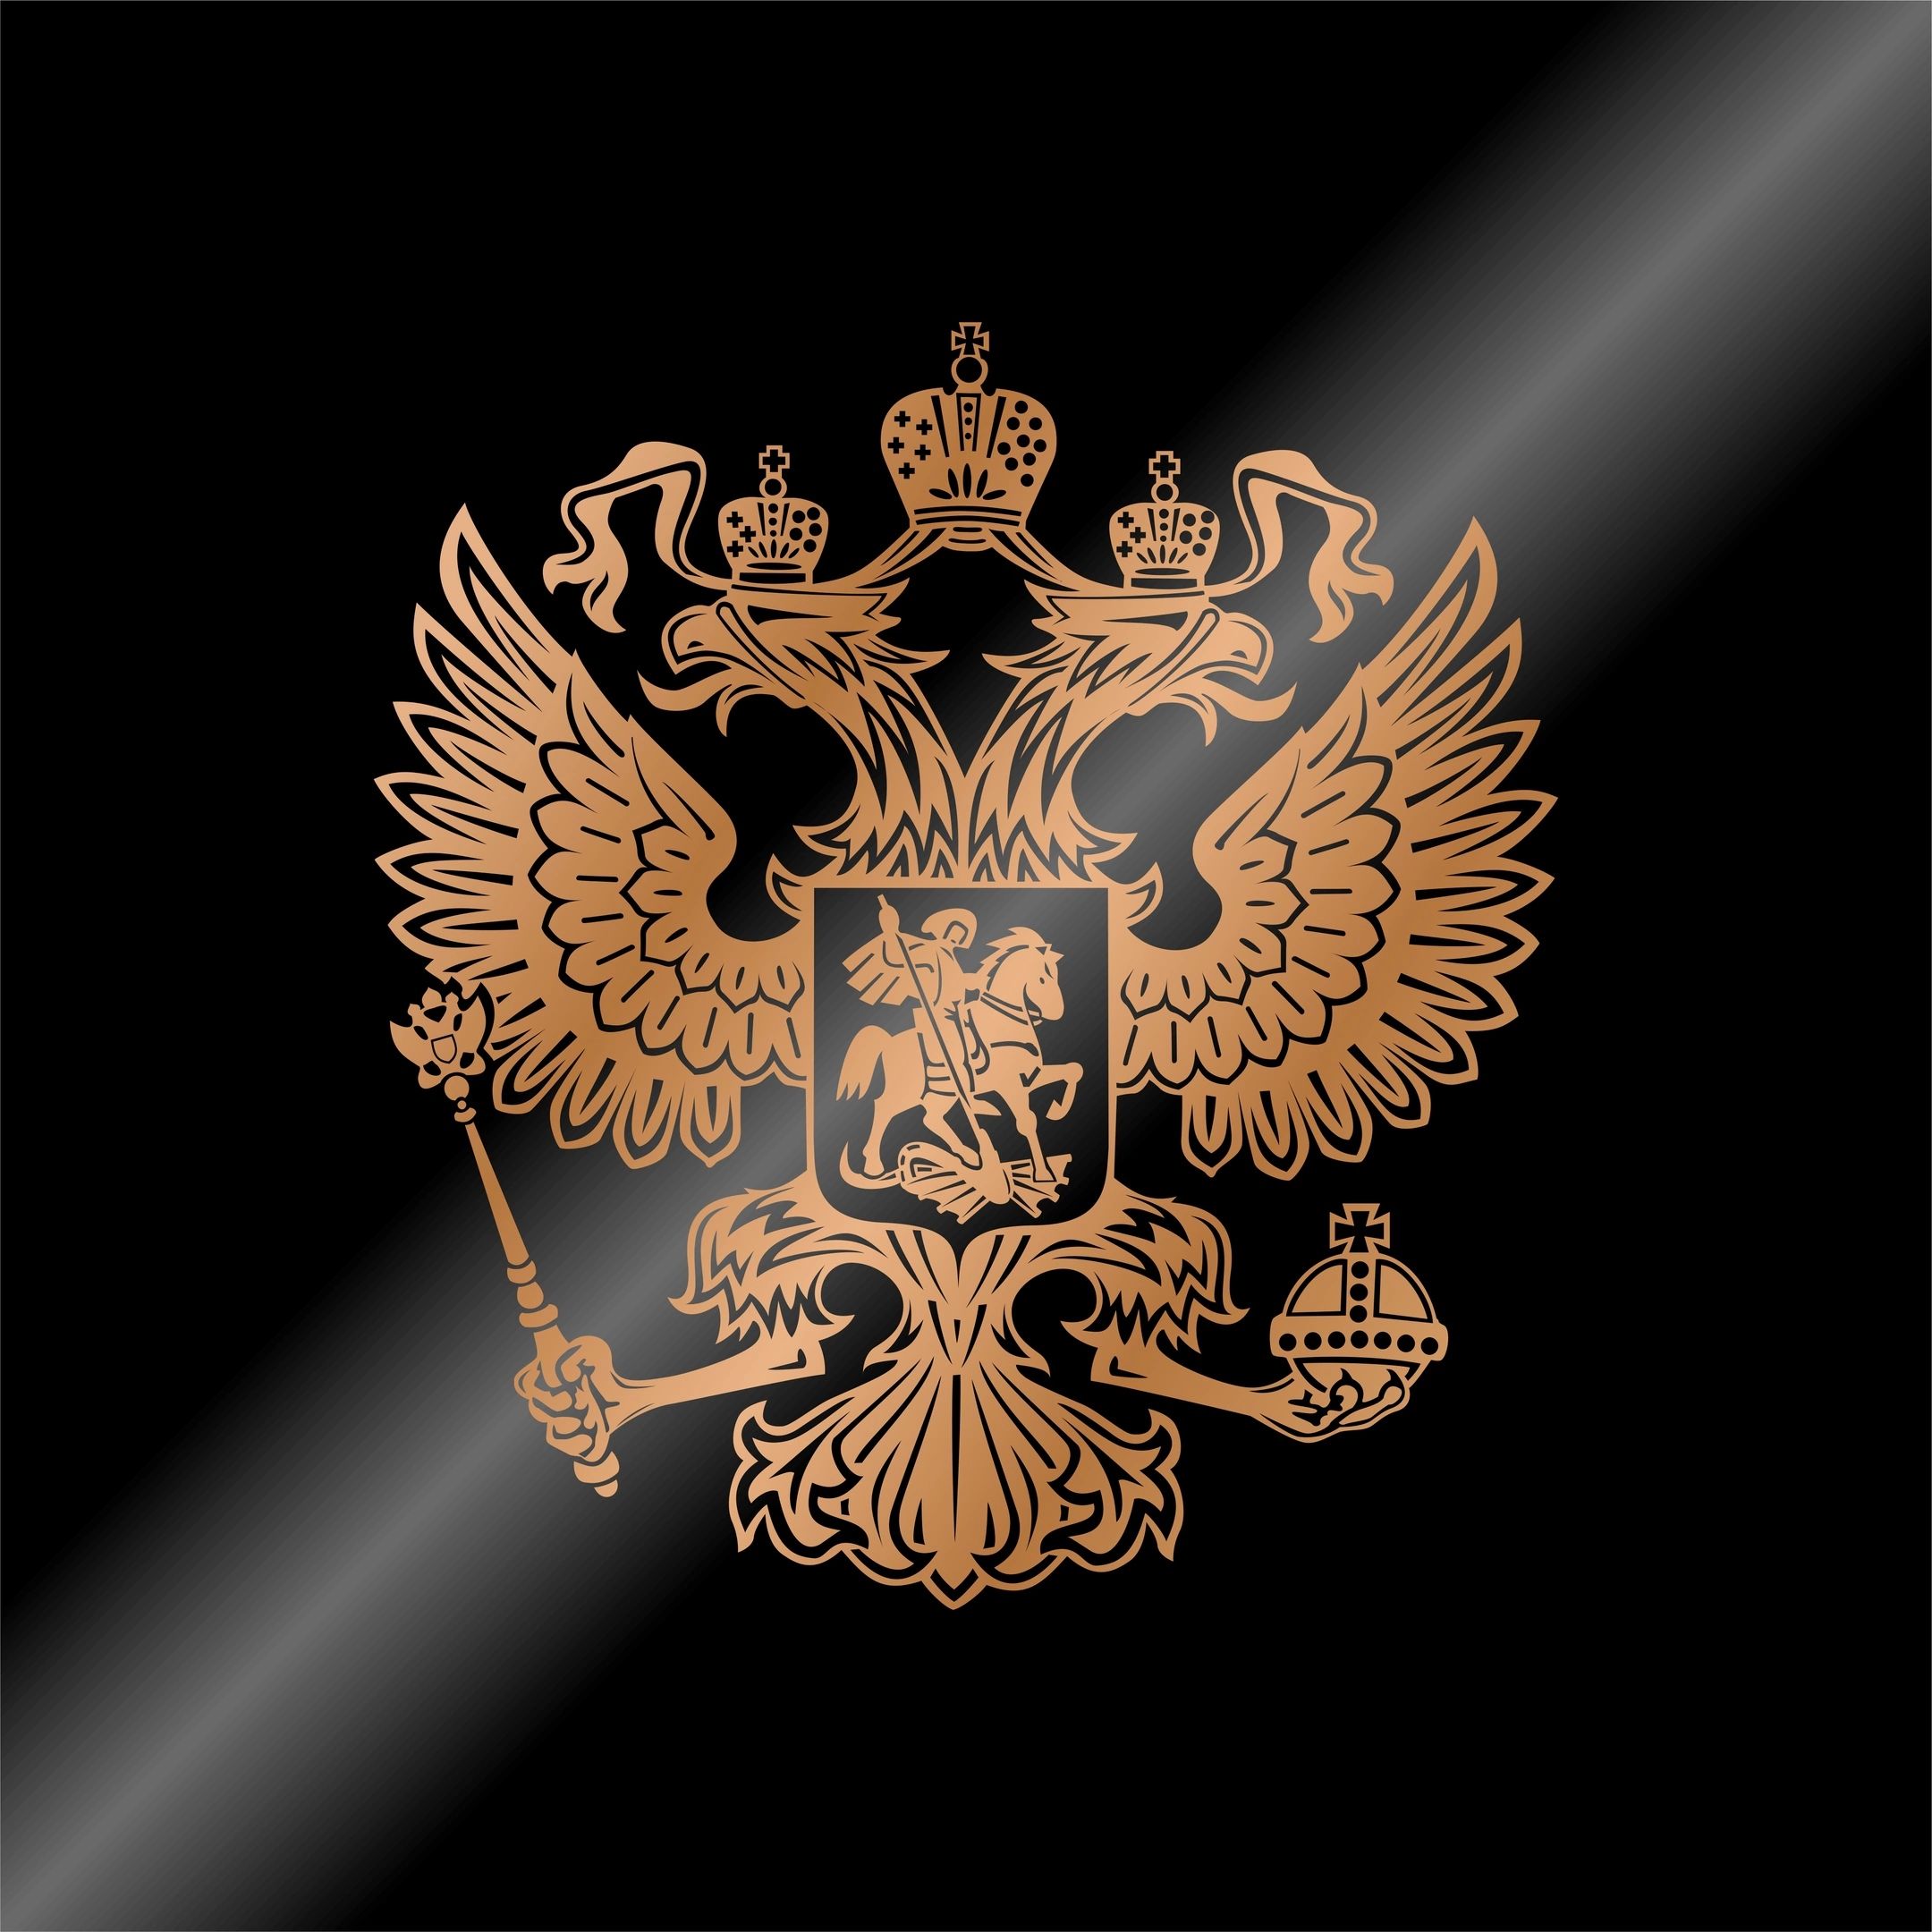 герб россии картинки в хорошем качестве